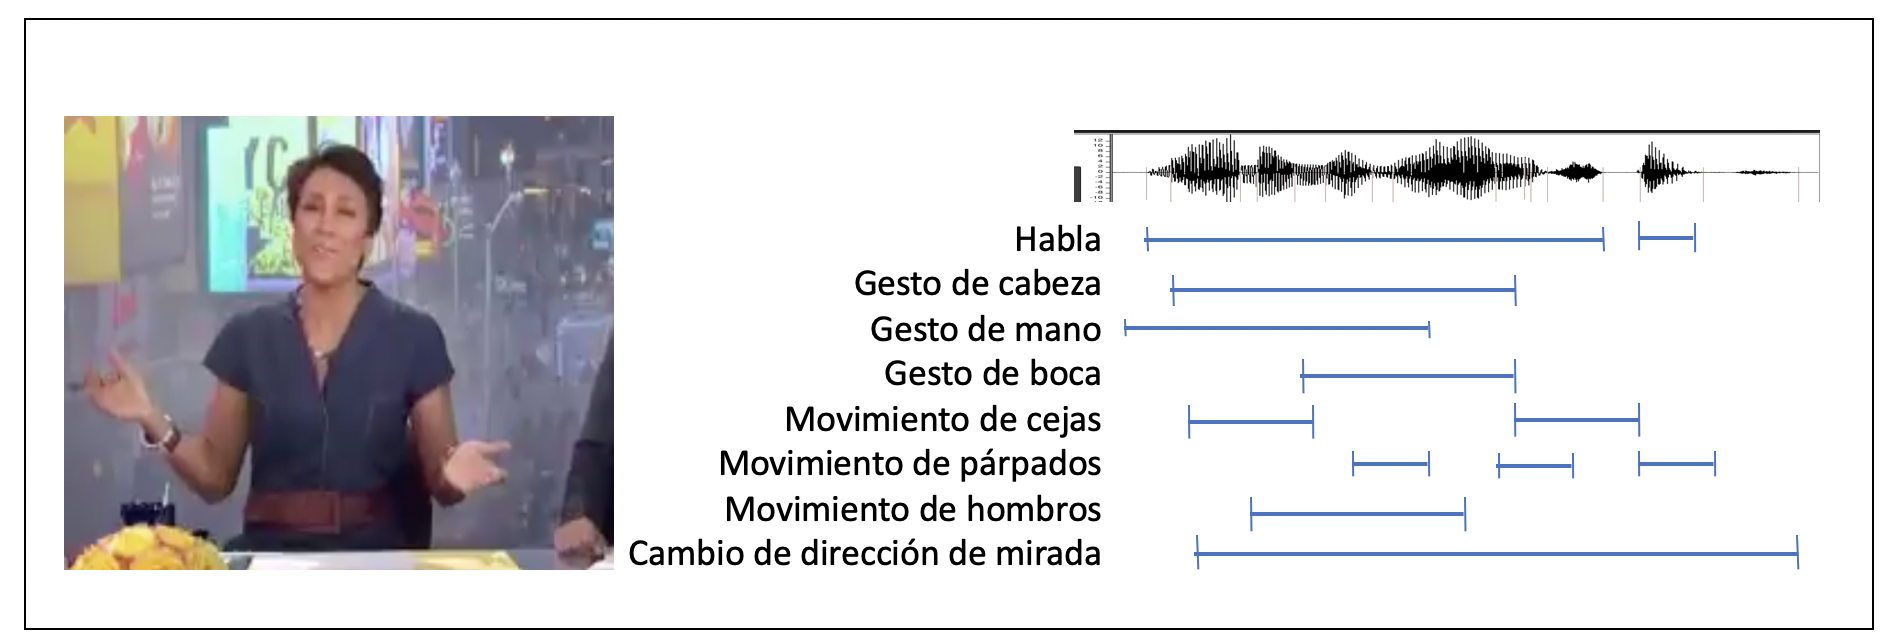 Figura 1.- Ejemplo hipotético de información multimodal en una expresión lingüística.